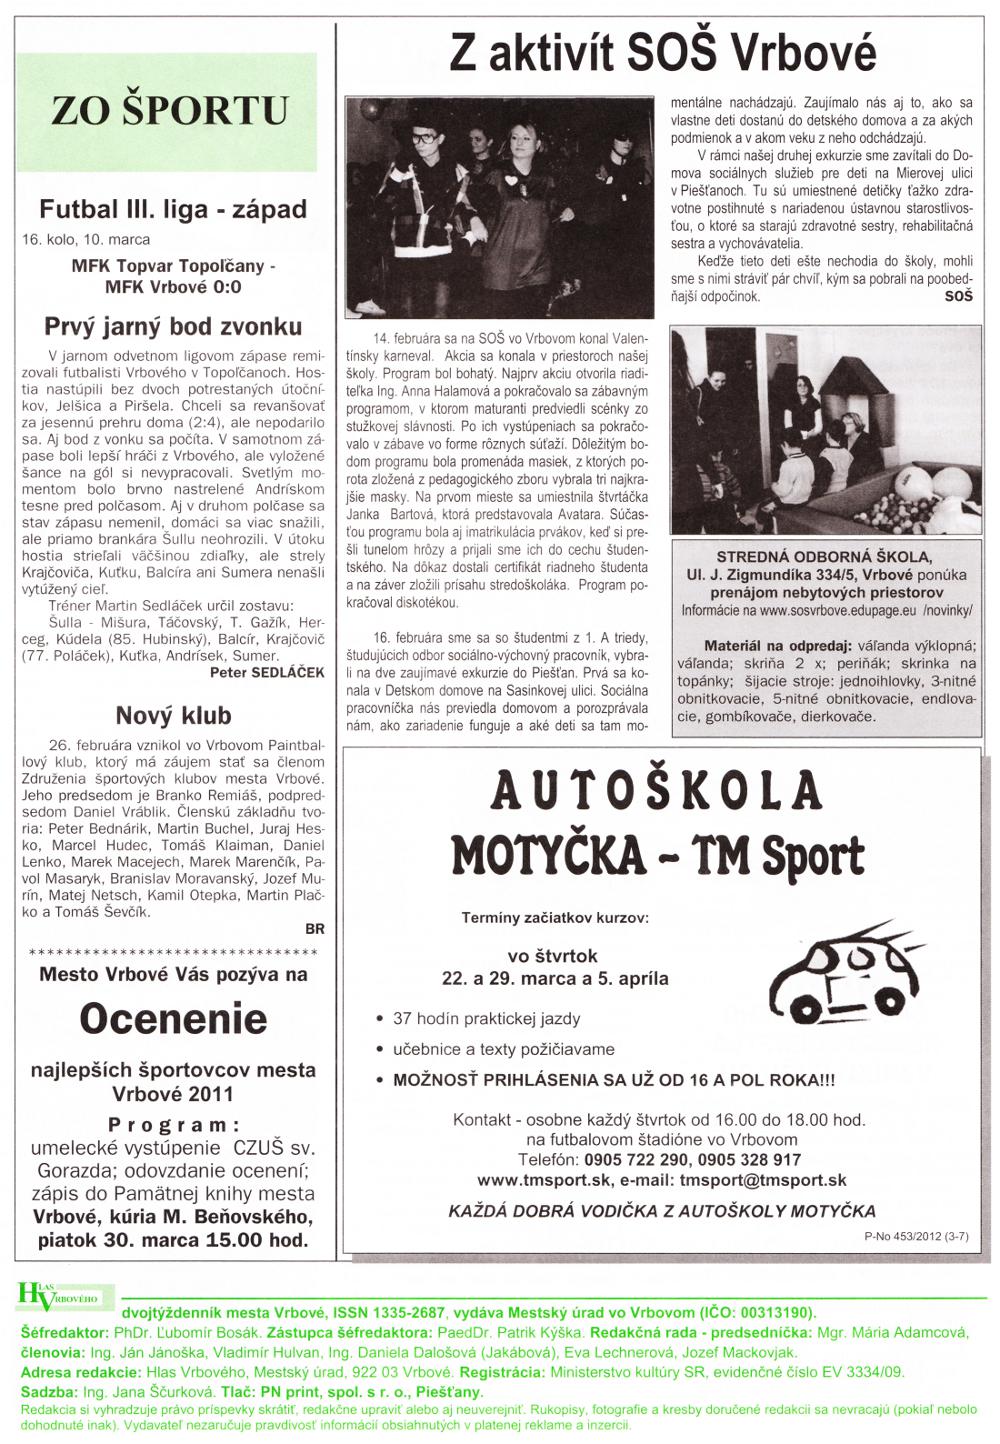 Hlas Vrbového 06/2012, strana 8